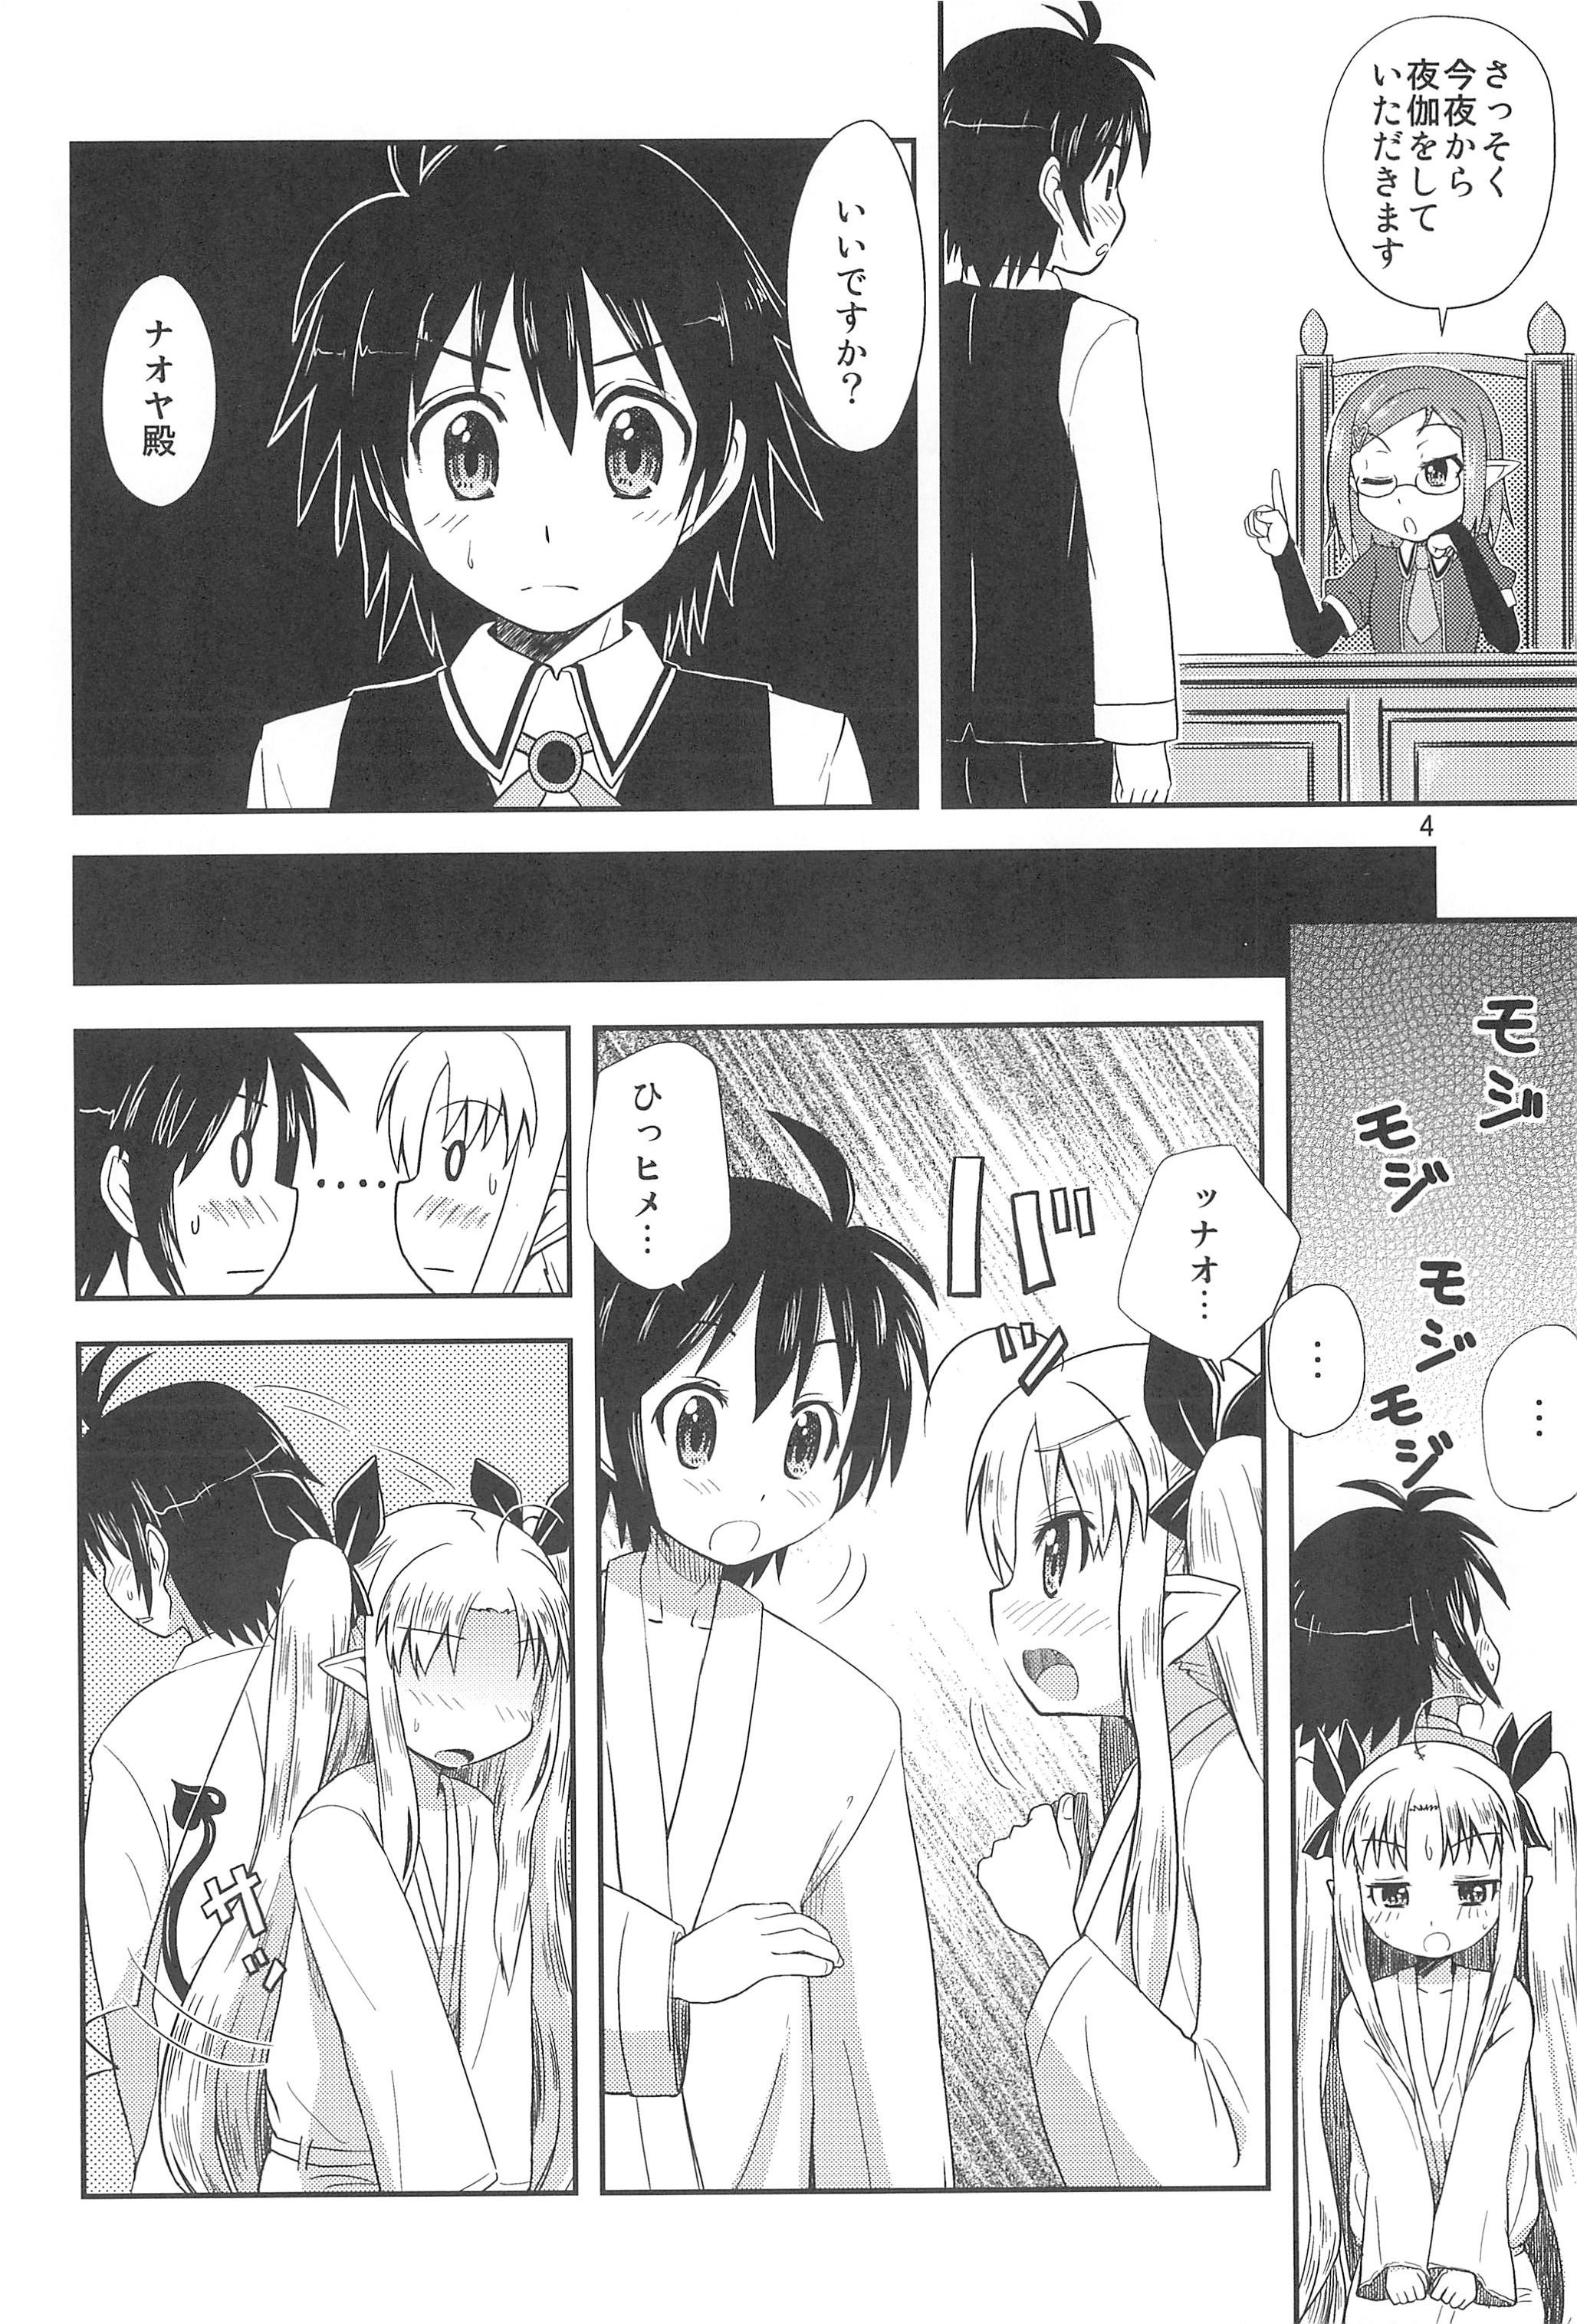 Perfect Tits Lotte no Hajimete! - Lotte no omocha Casero - Page 4